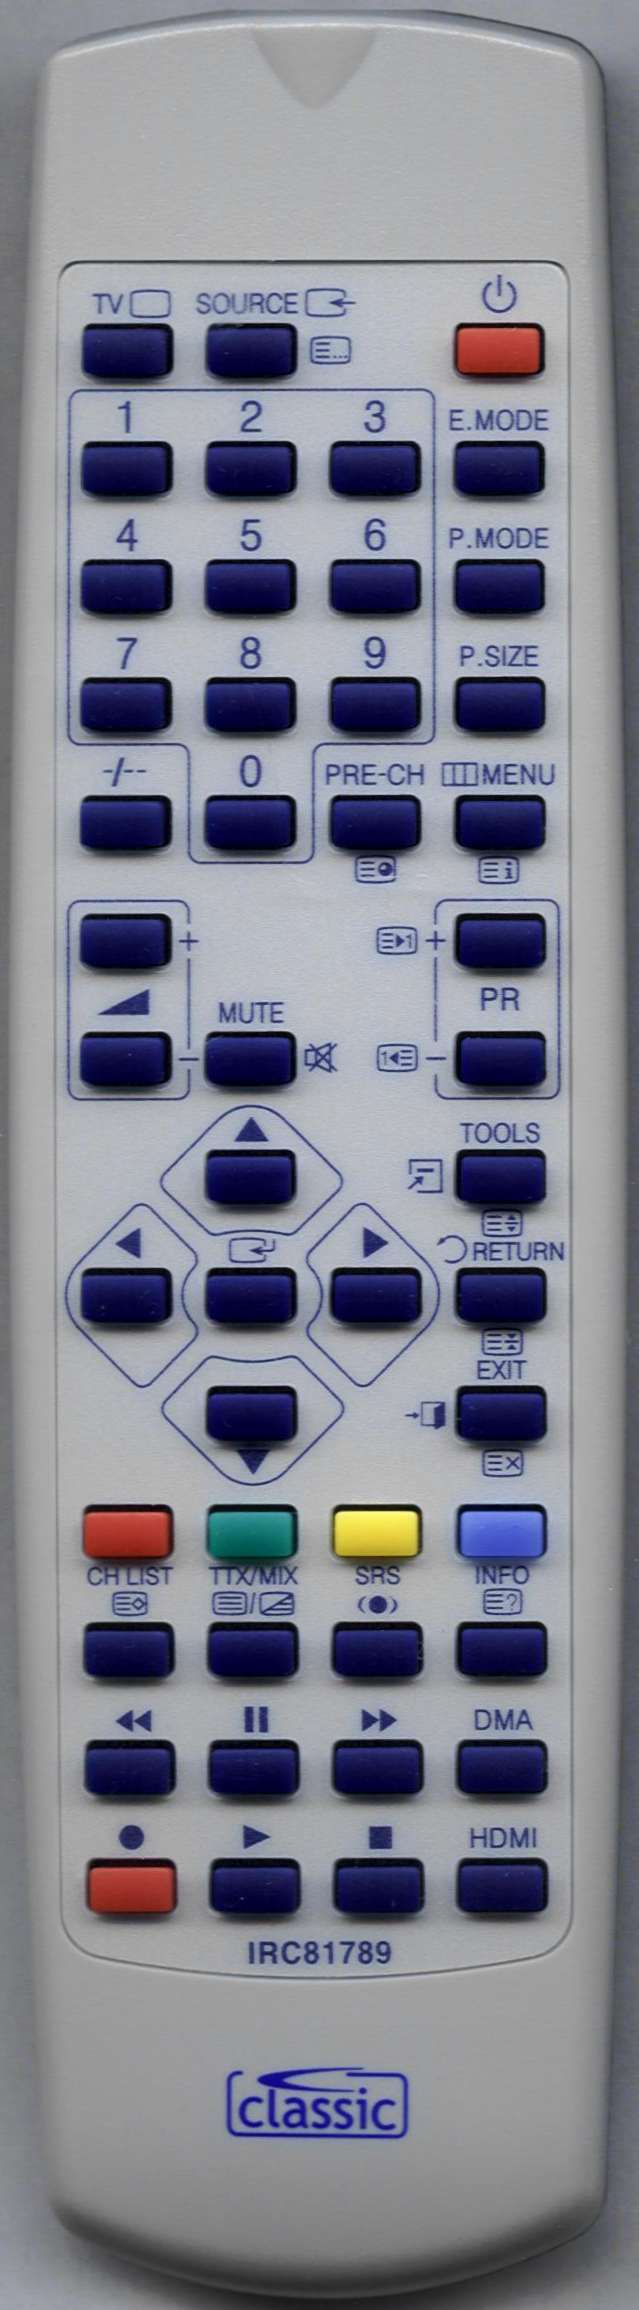 SAMSUNG LA37A450C1 Remote Control Alternative